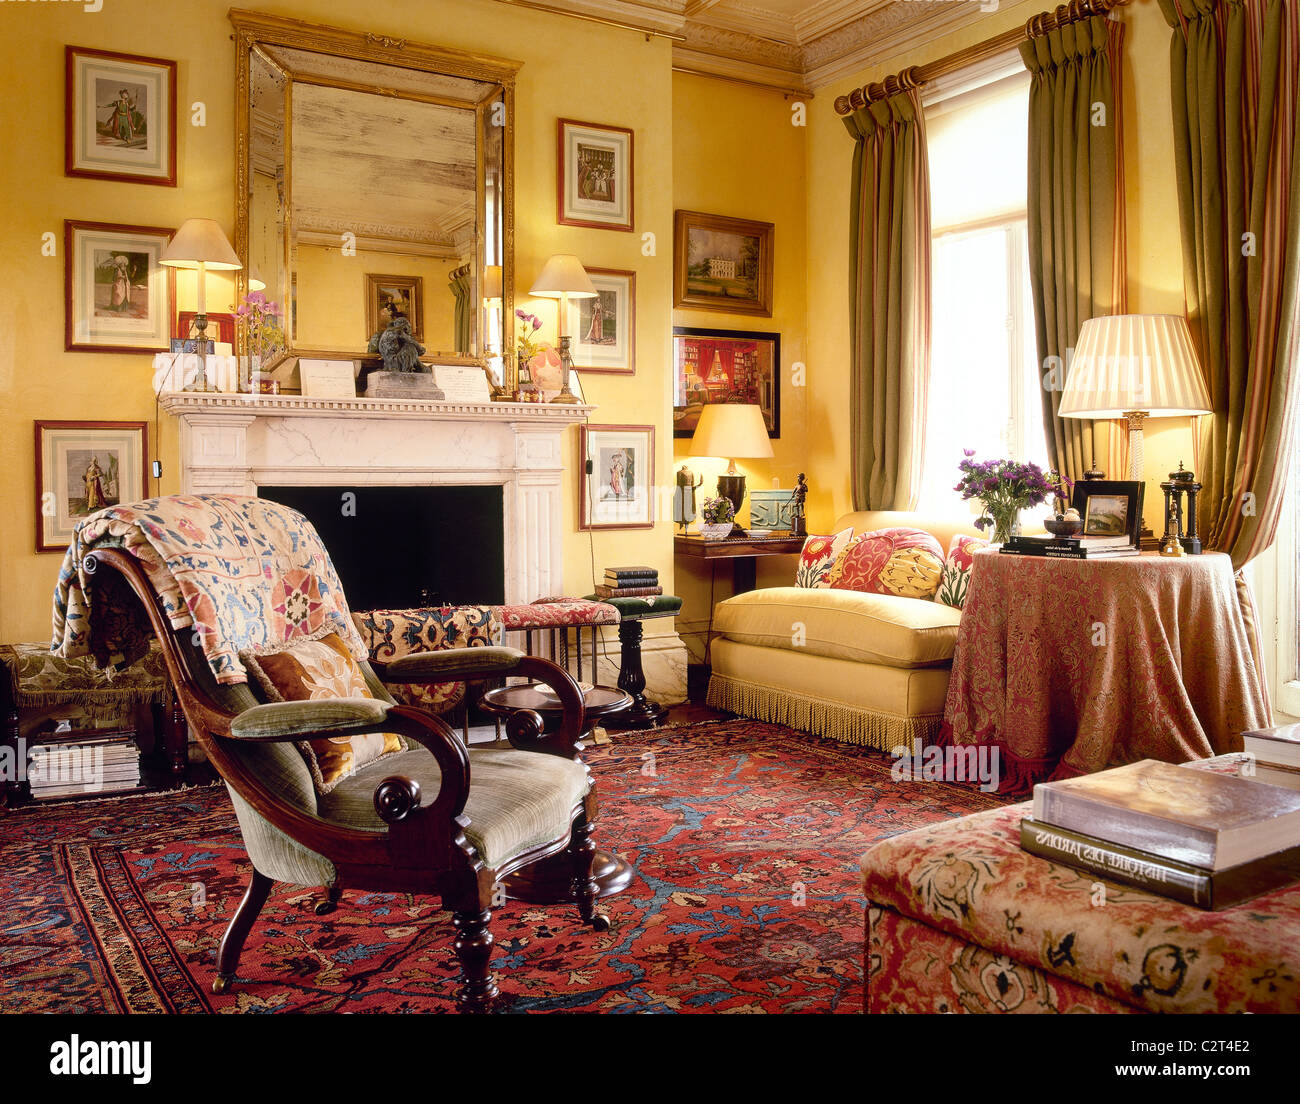 Salon jaune, marbre, cheminée, rideaux brun Banque D'Images